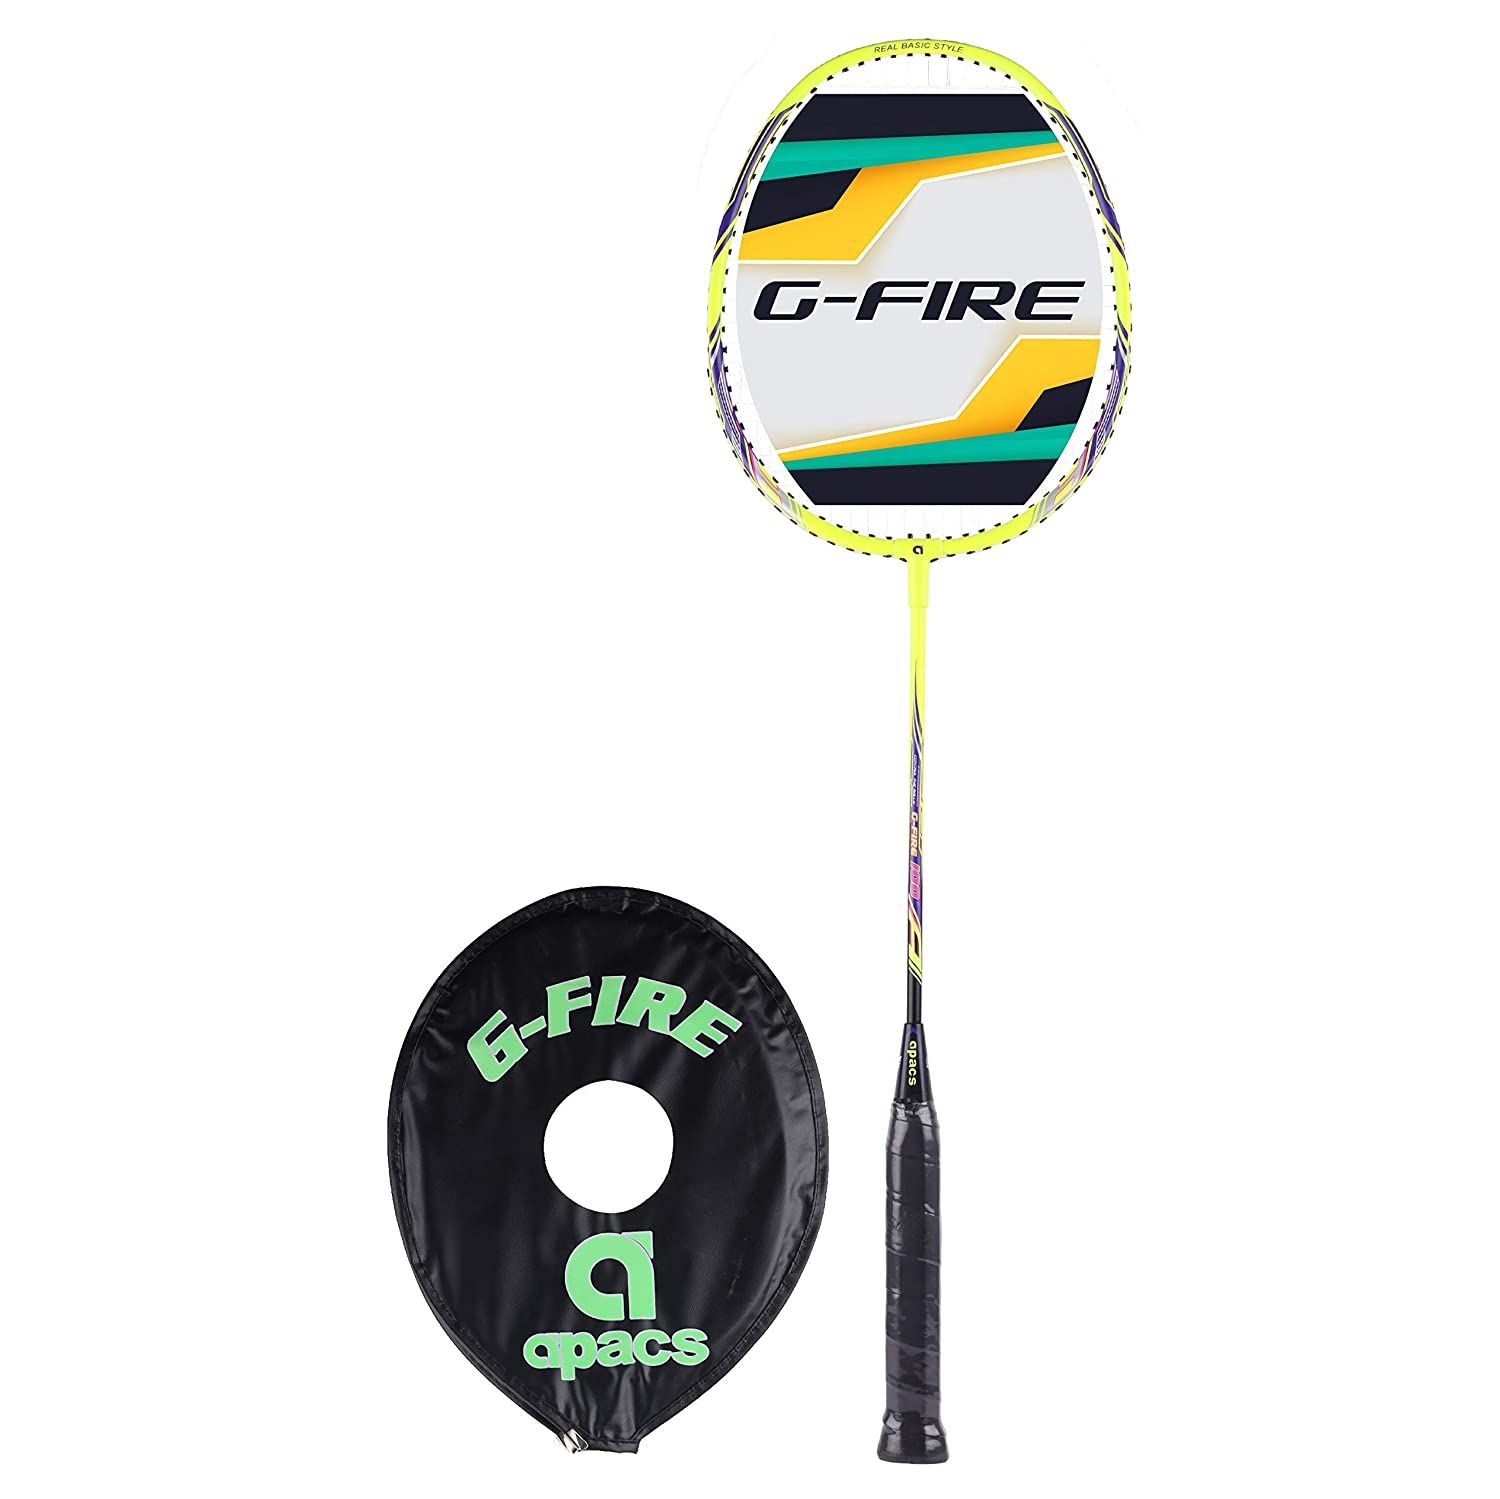 Apacs G-Fire 100 Strung Badminton RacquetApacs G-Fire 100 Strung Badminton Racquet